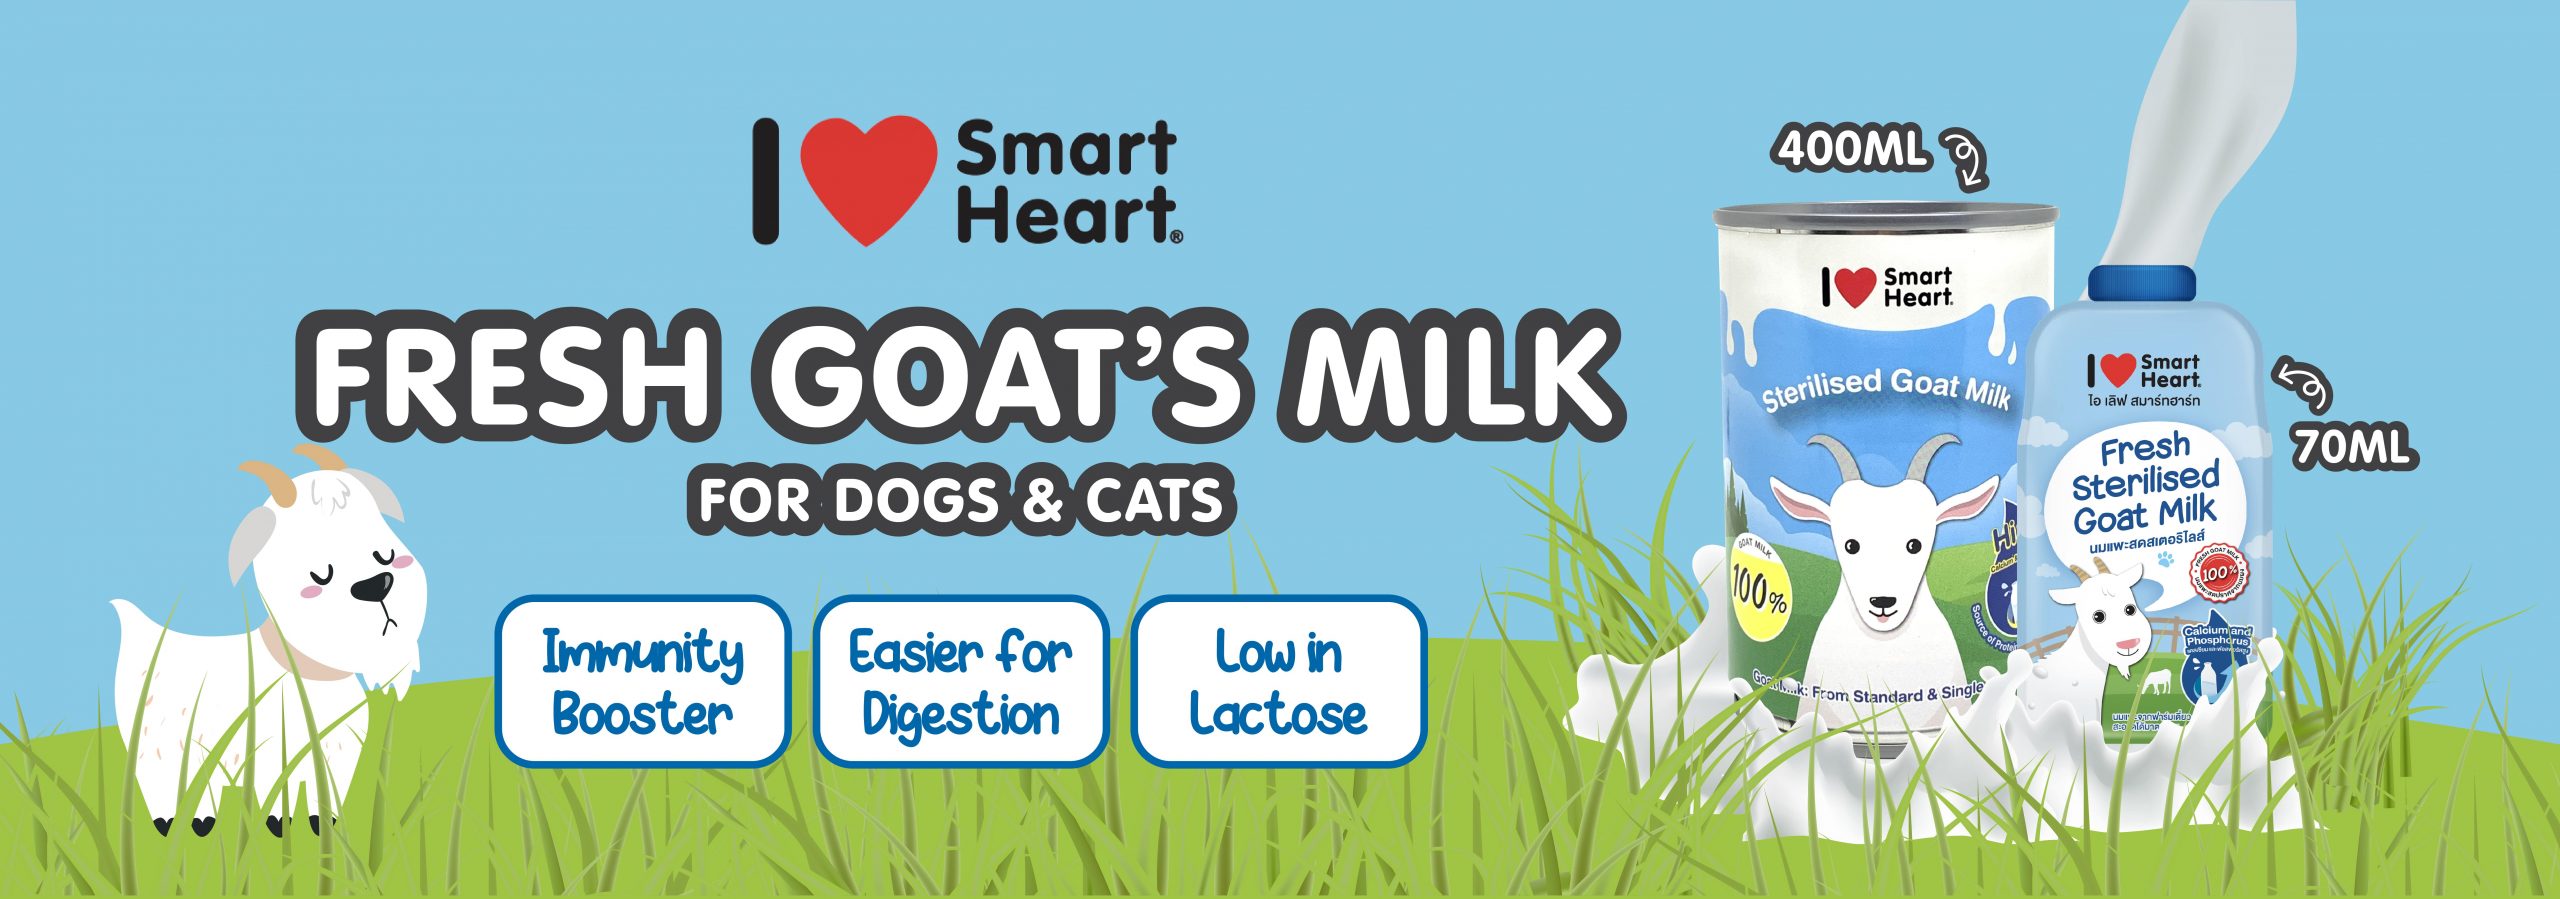 SmartHeart Goat's Milk Banner-01-min